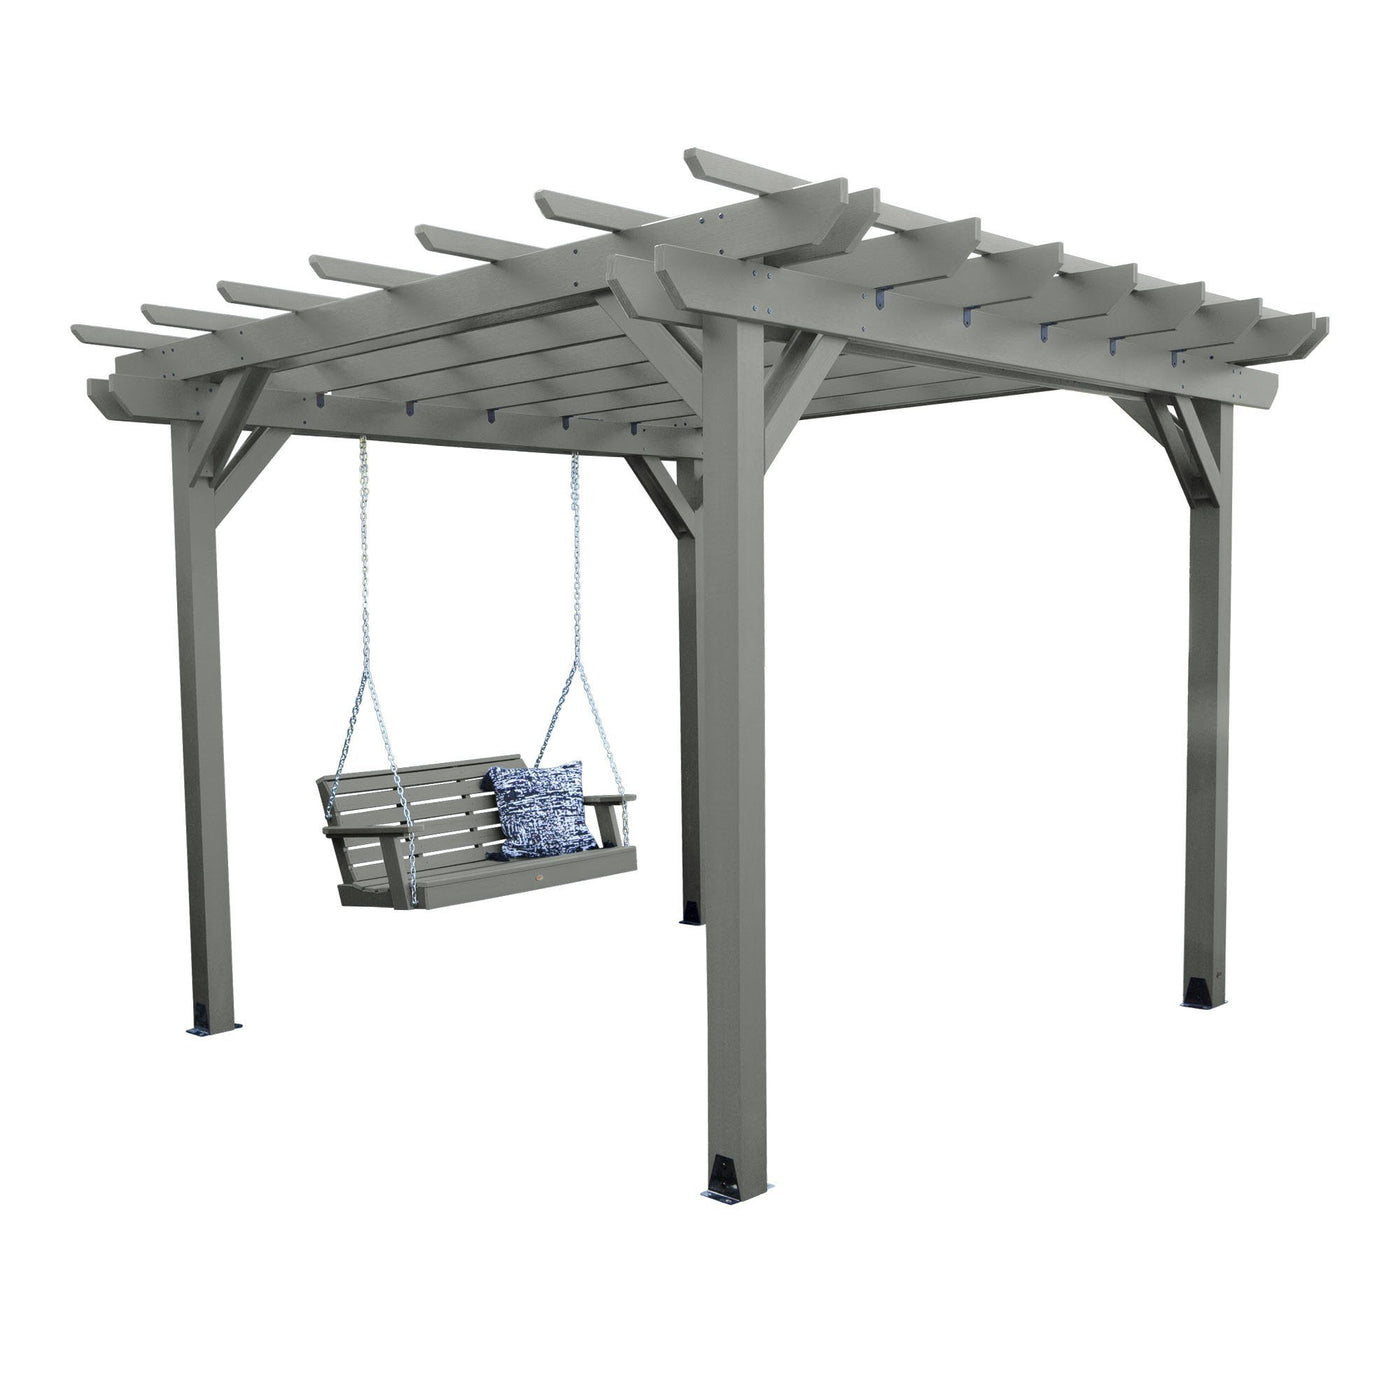 Bodhi 10’ x 10’ DIY Pergola with 4’ Weatherly Porch Swing Highwood USA Coastal Teak 